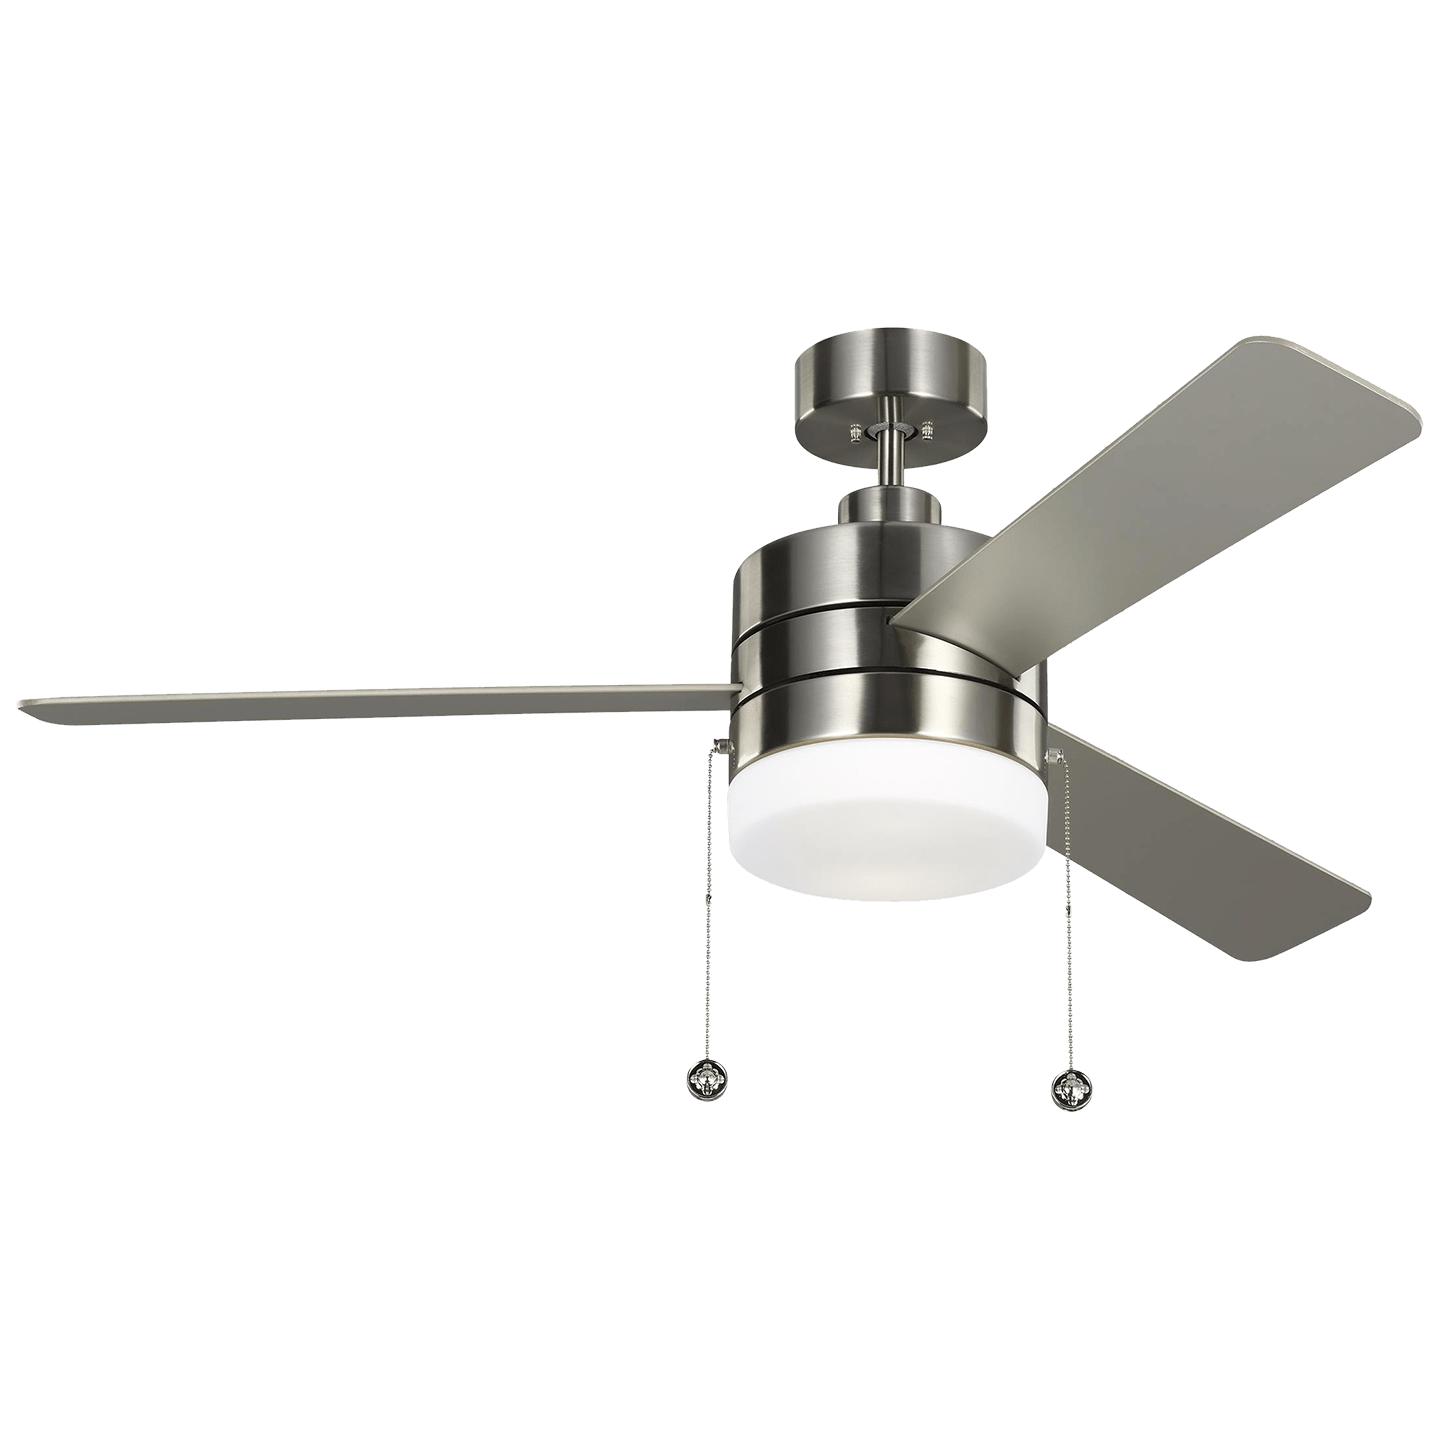 Купить Потолочный вентилятор Syrus 52" LED Ceiling Fan в интернет-магазине roooms.ru